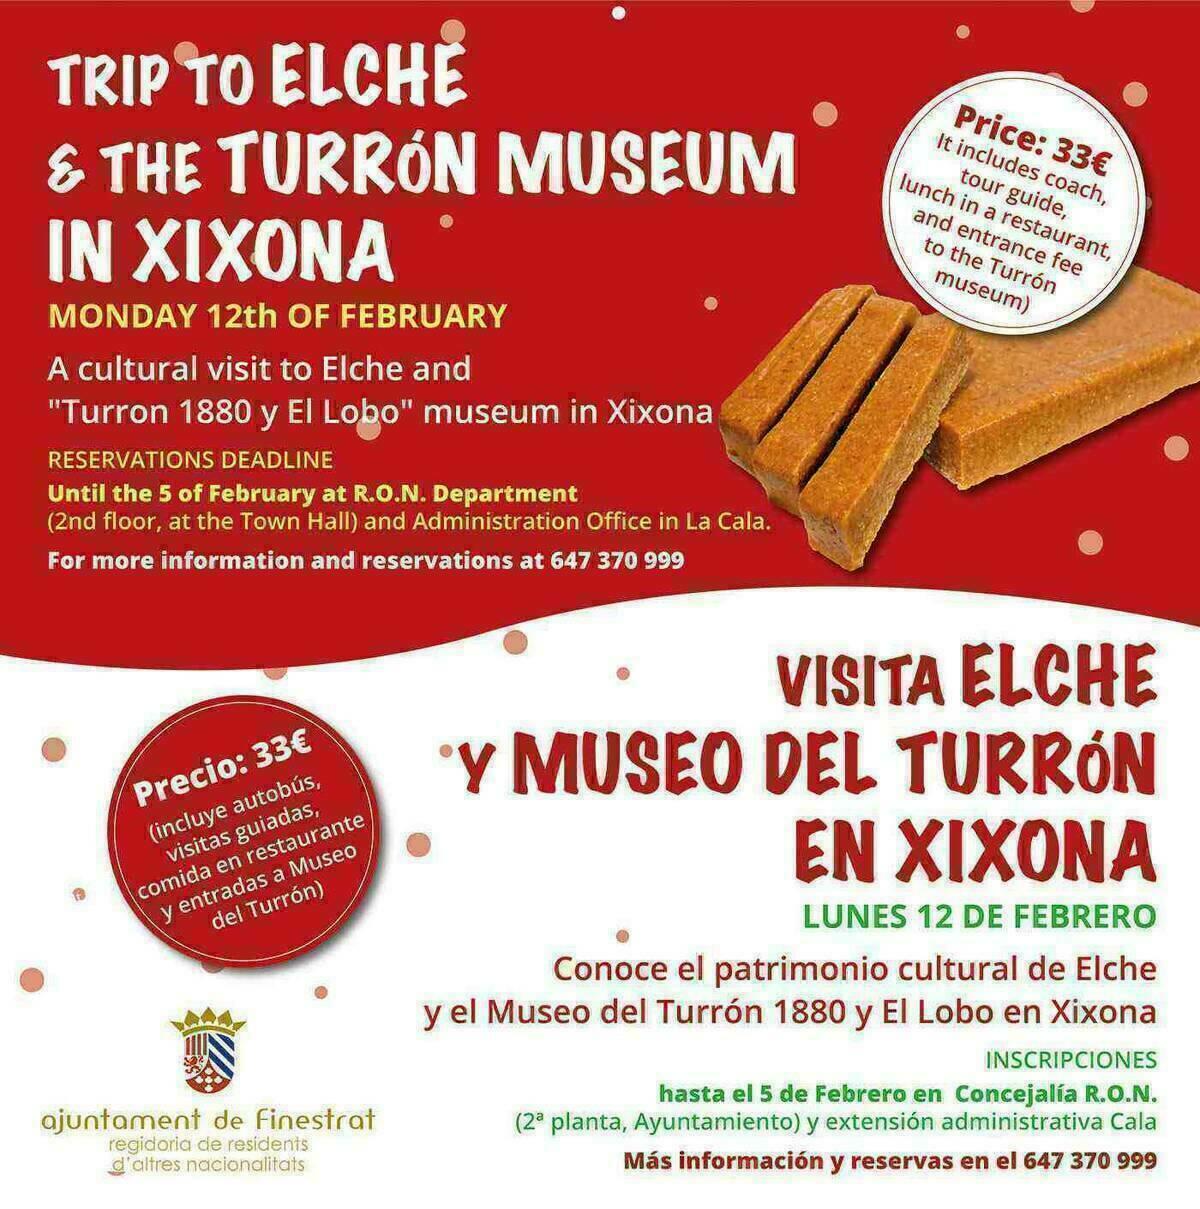 La Concejalía de Residentes de Otras Nacionalidades de Finestrat celebrará la visita a Elche y a Xixona el próximo 12 de febrero